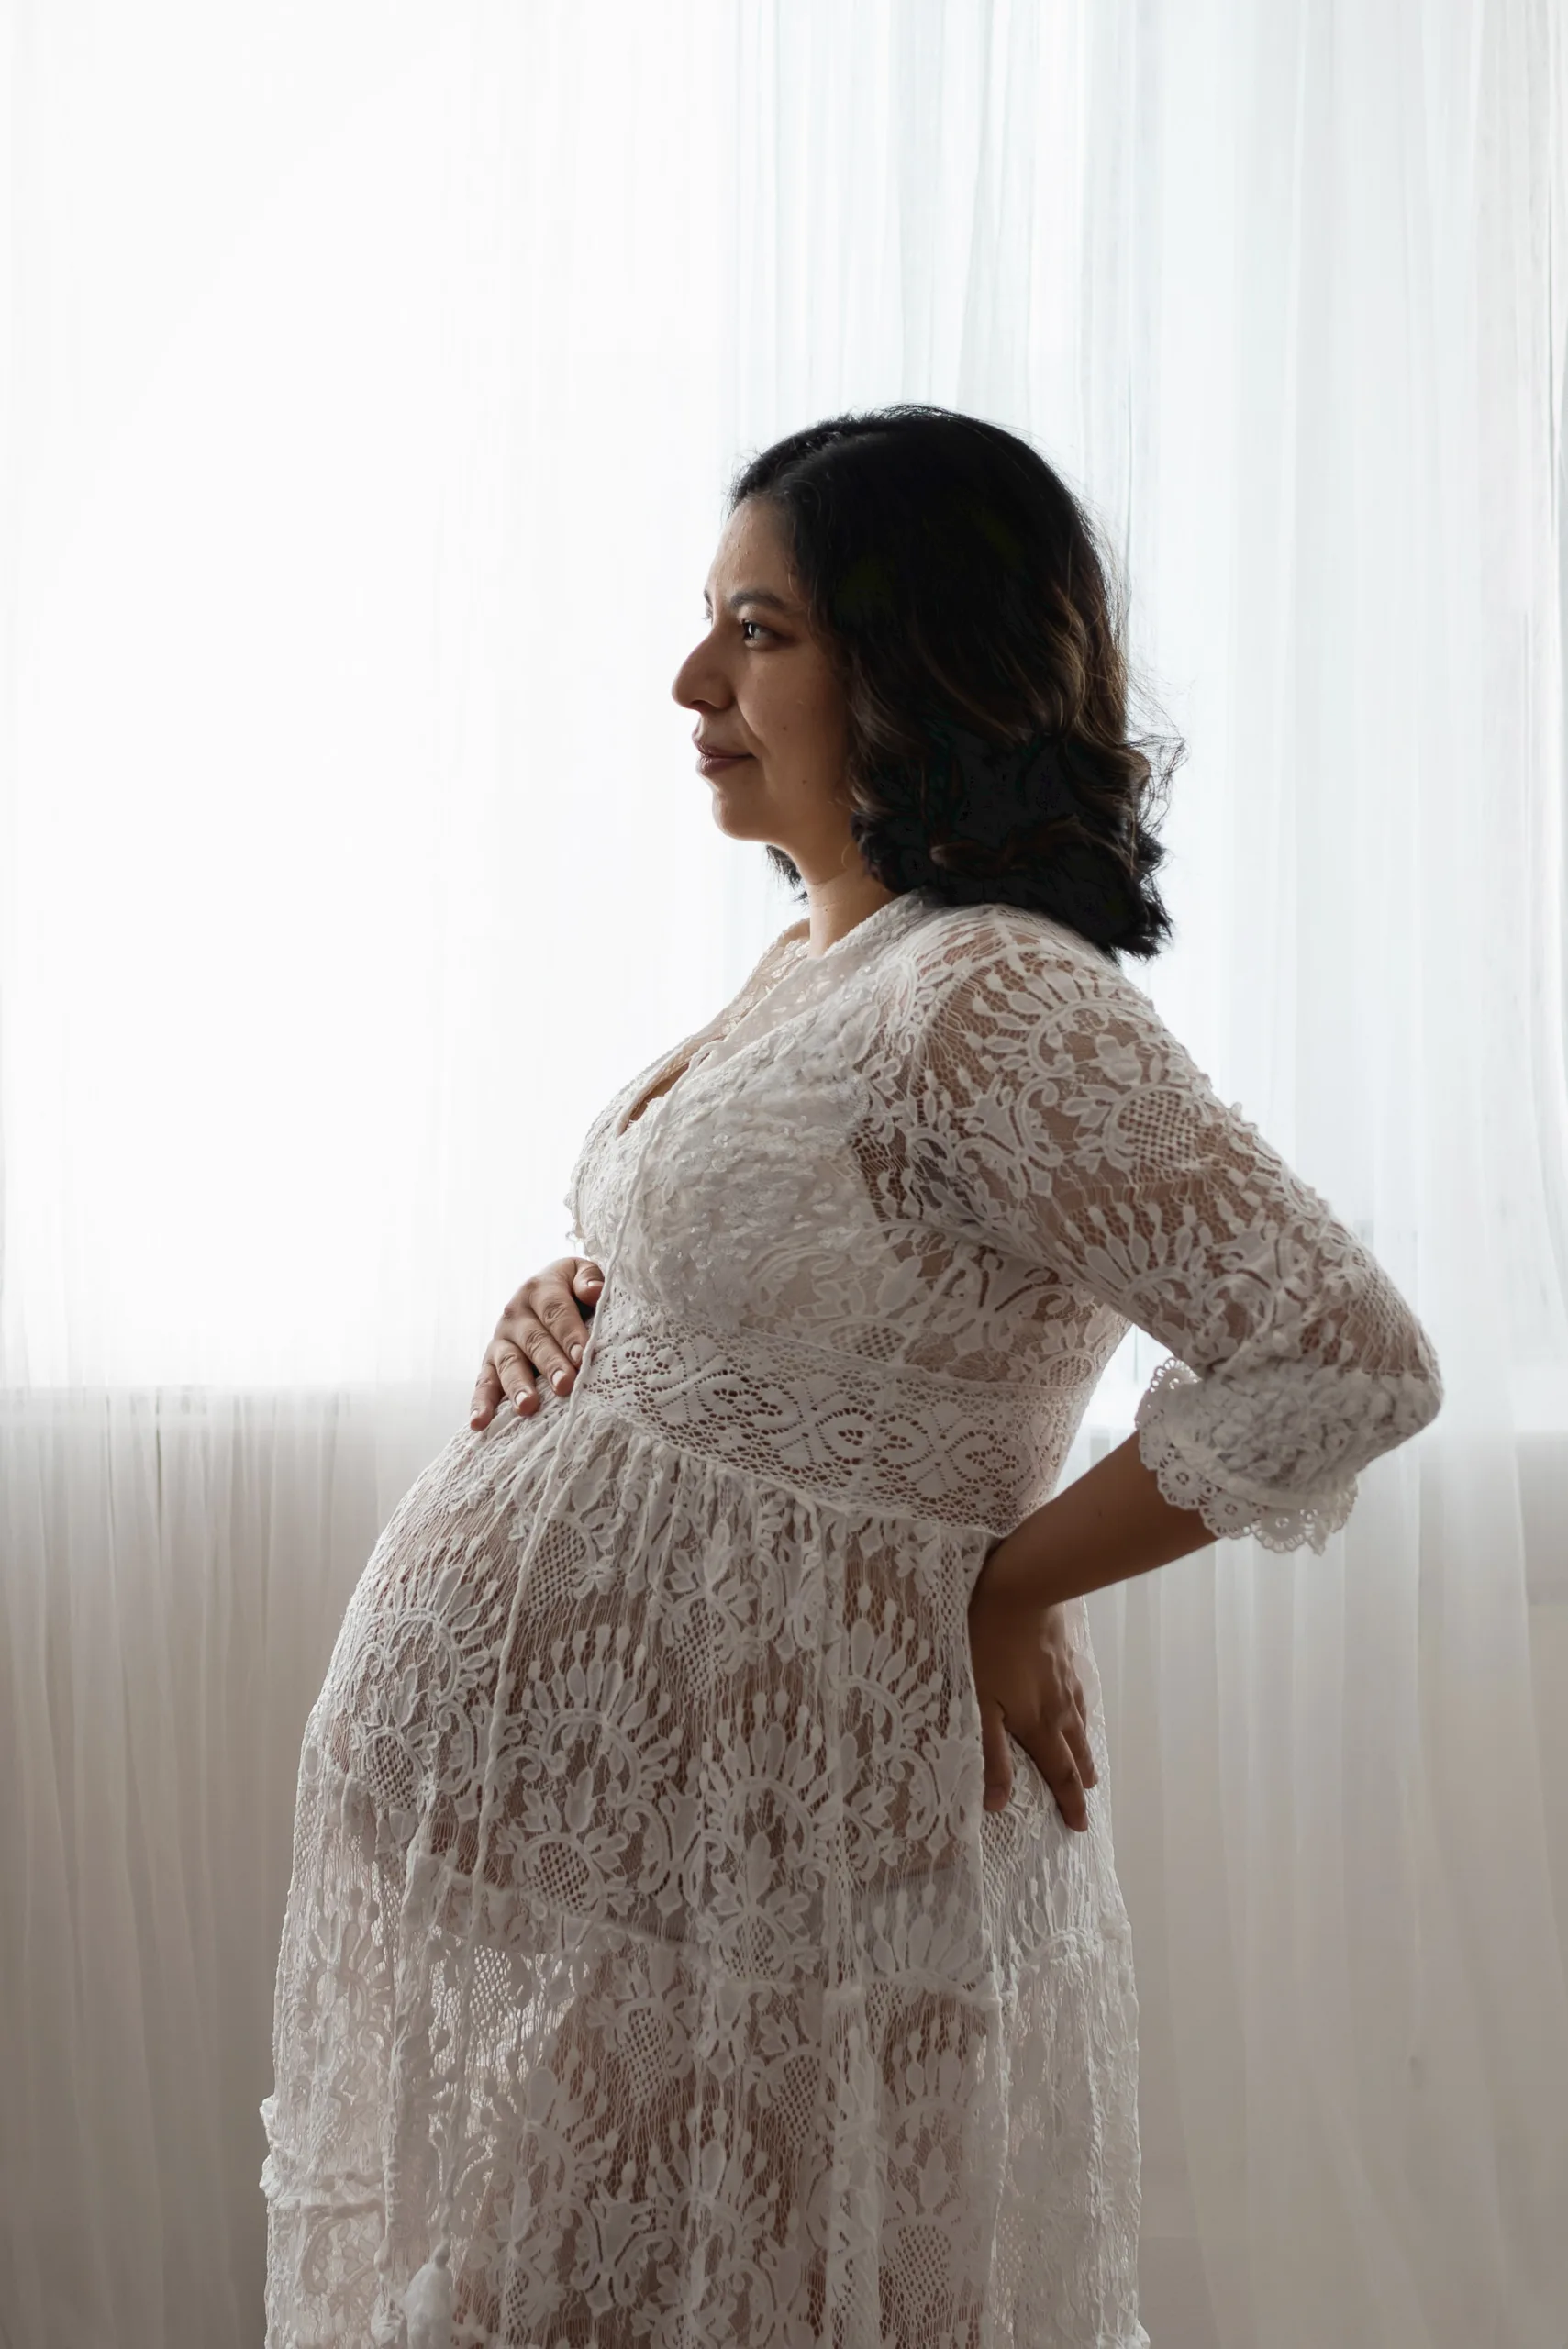 Zwangerschapsfotoshoot in foto studio in arnhem voor het vastleggen van schitterende momenten